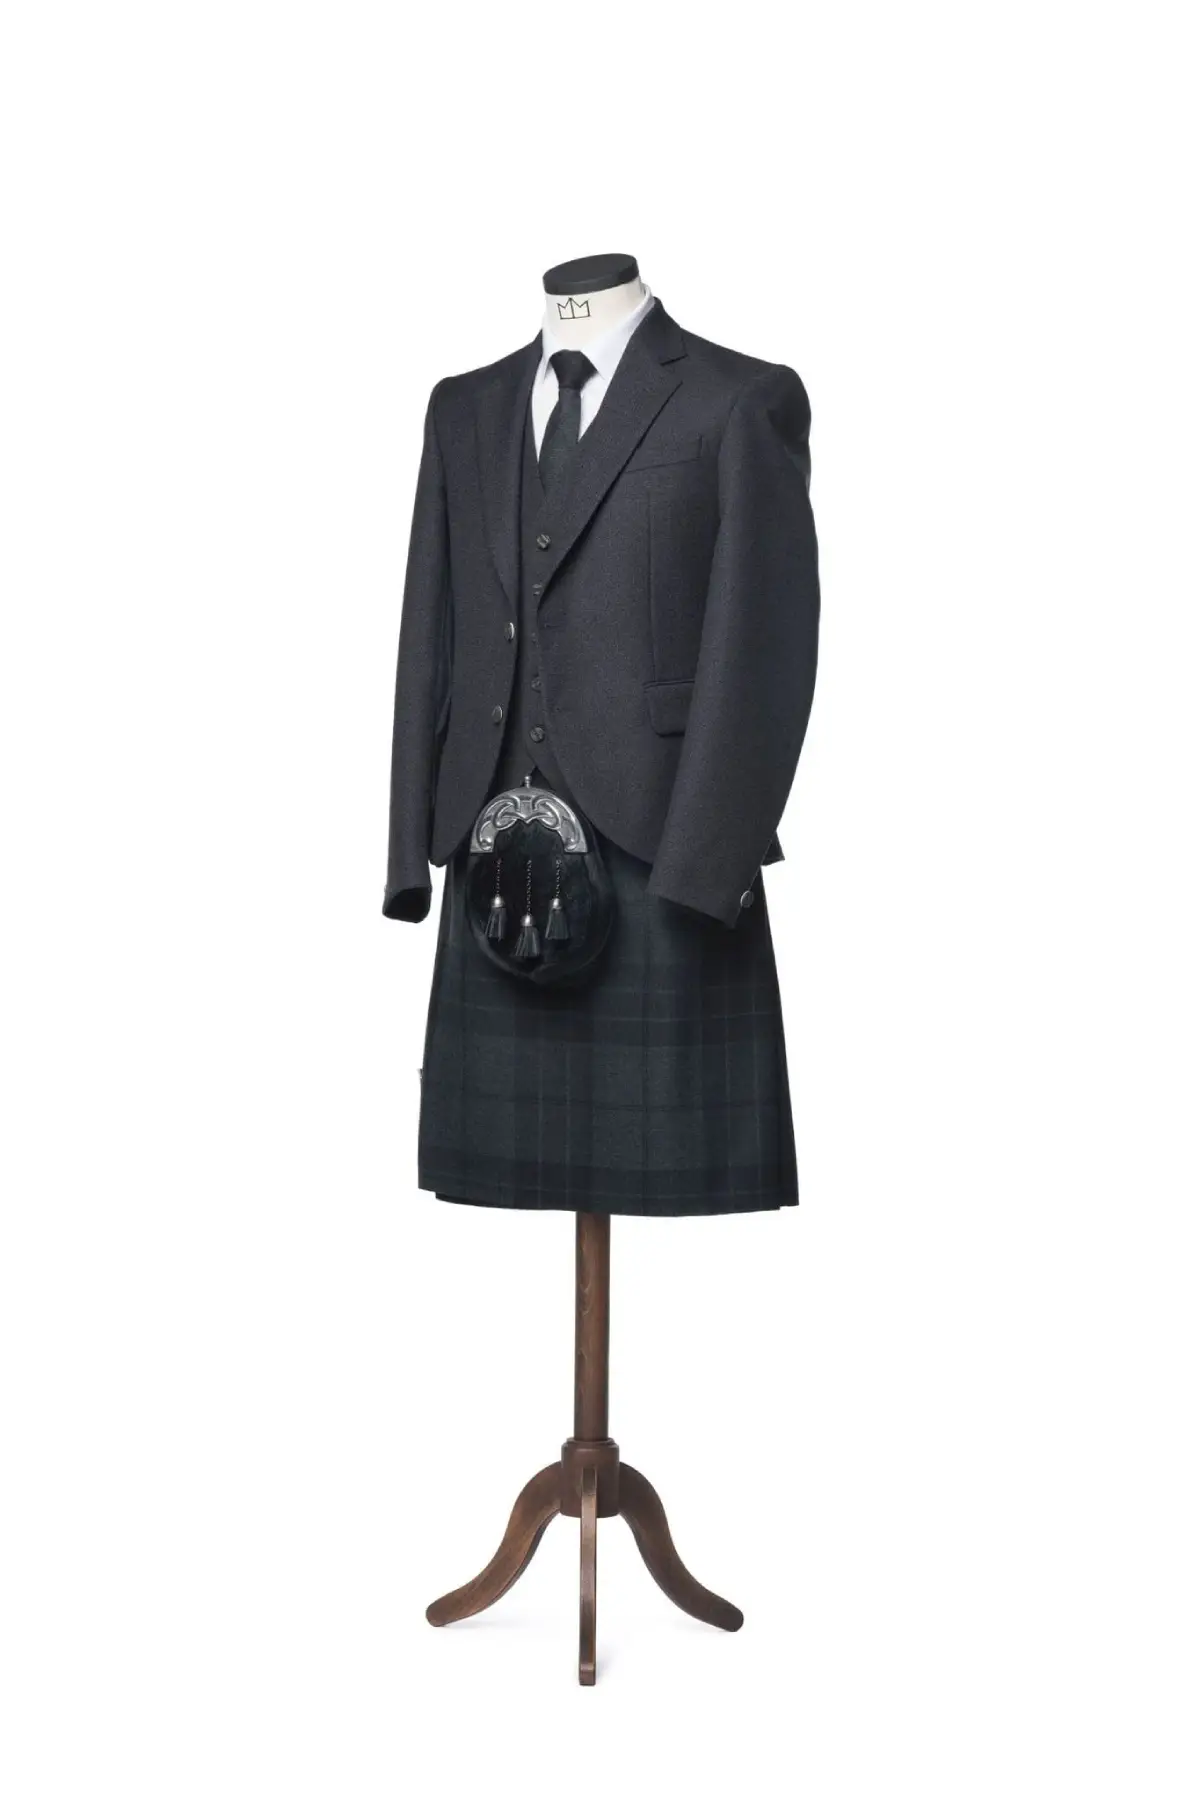 Tweed-Kilt-Outfit3 (1)